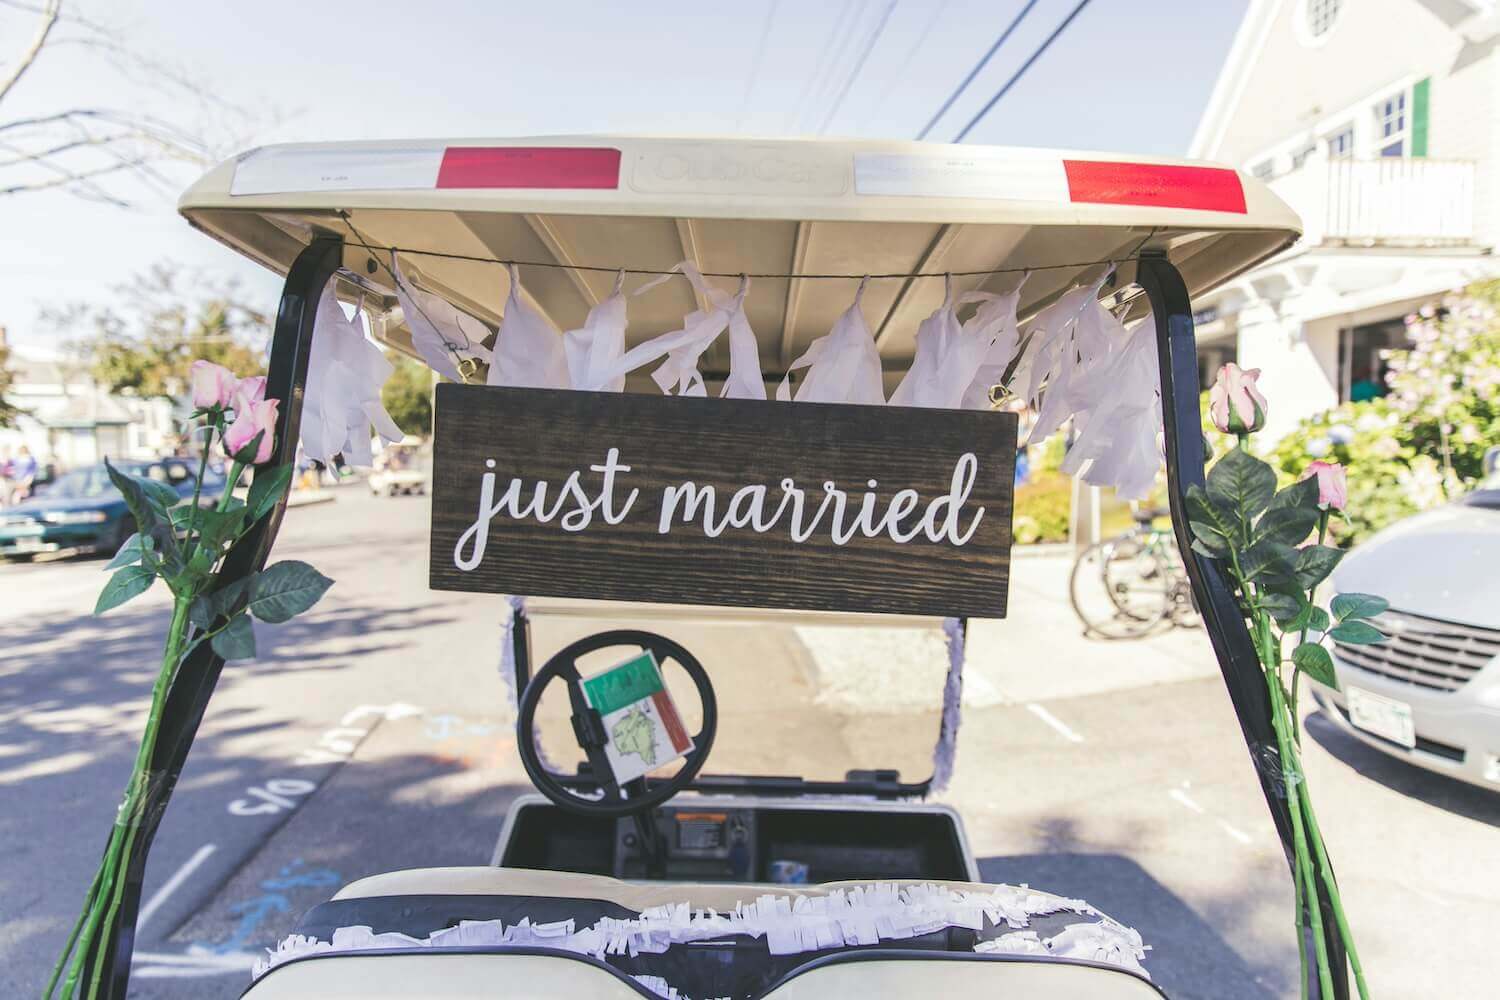 just marriedと書かれた木製看板が吊るされ、花やレースで飾られたゴルフカート